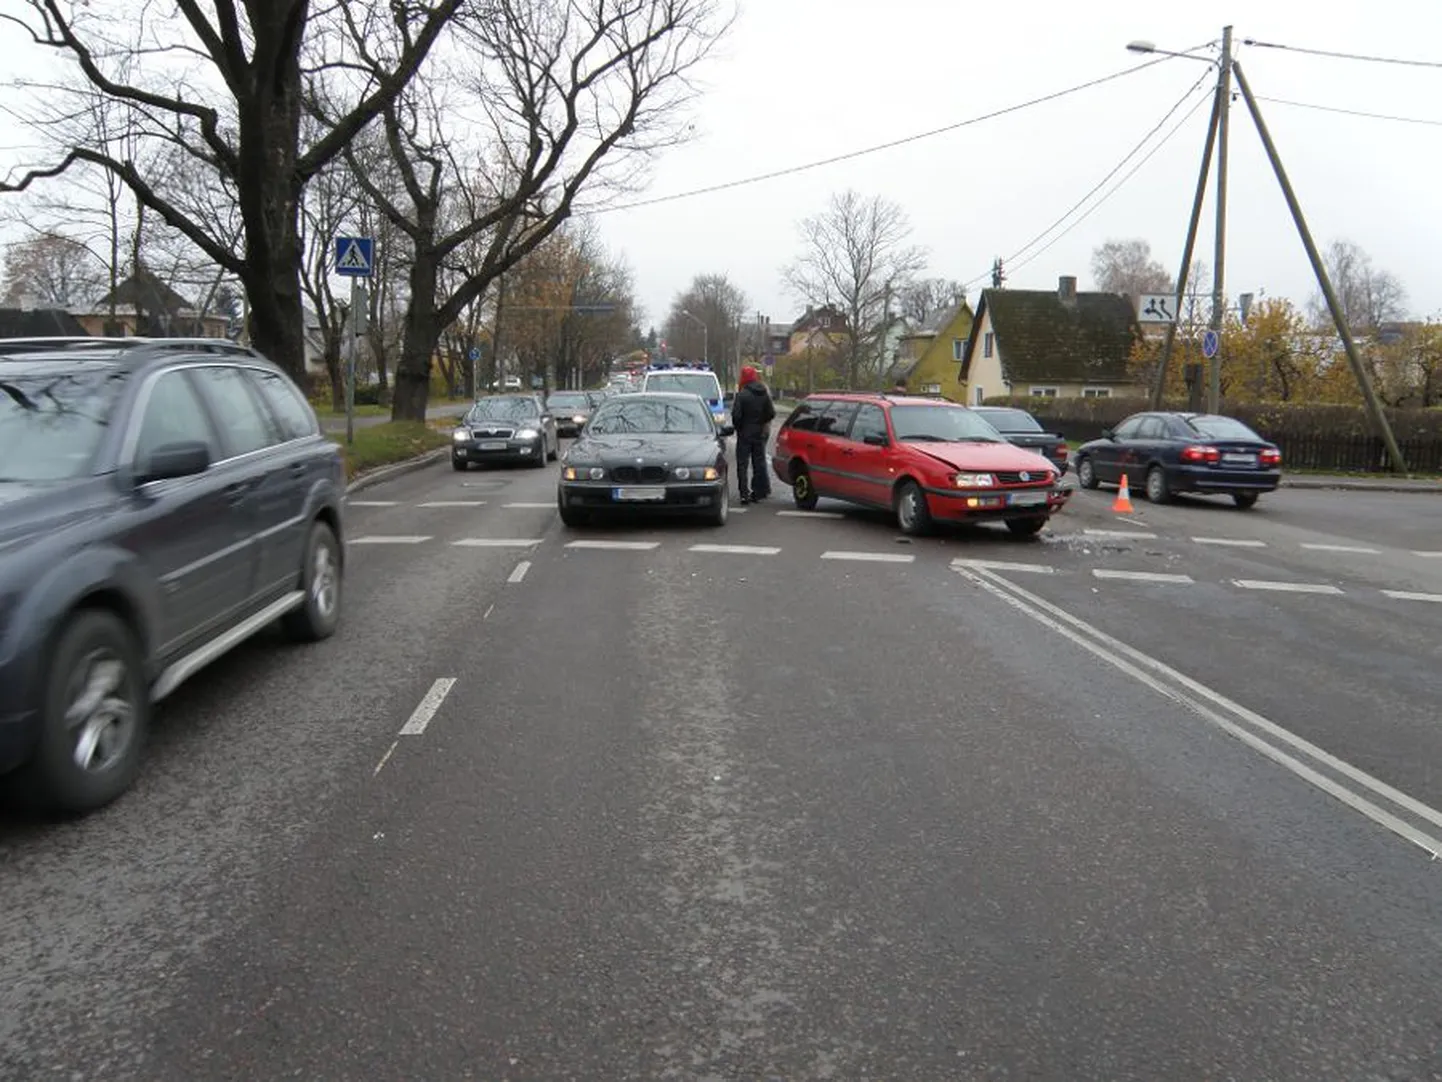 Liiklusõnnetus Tartus Riia ja Lunini tänava ristmikul, milles osales neli autot.